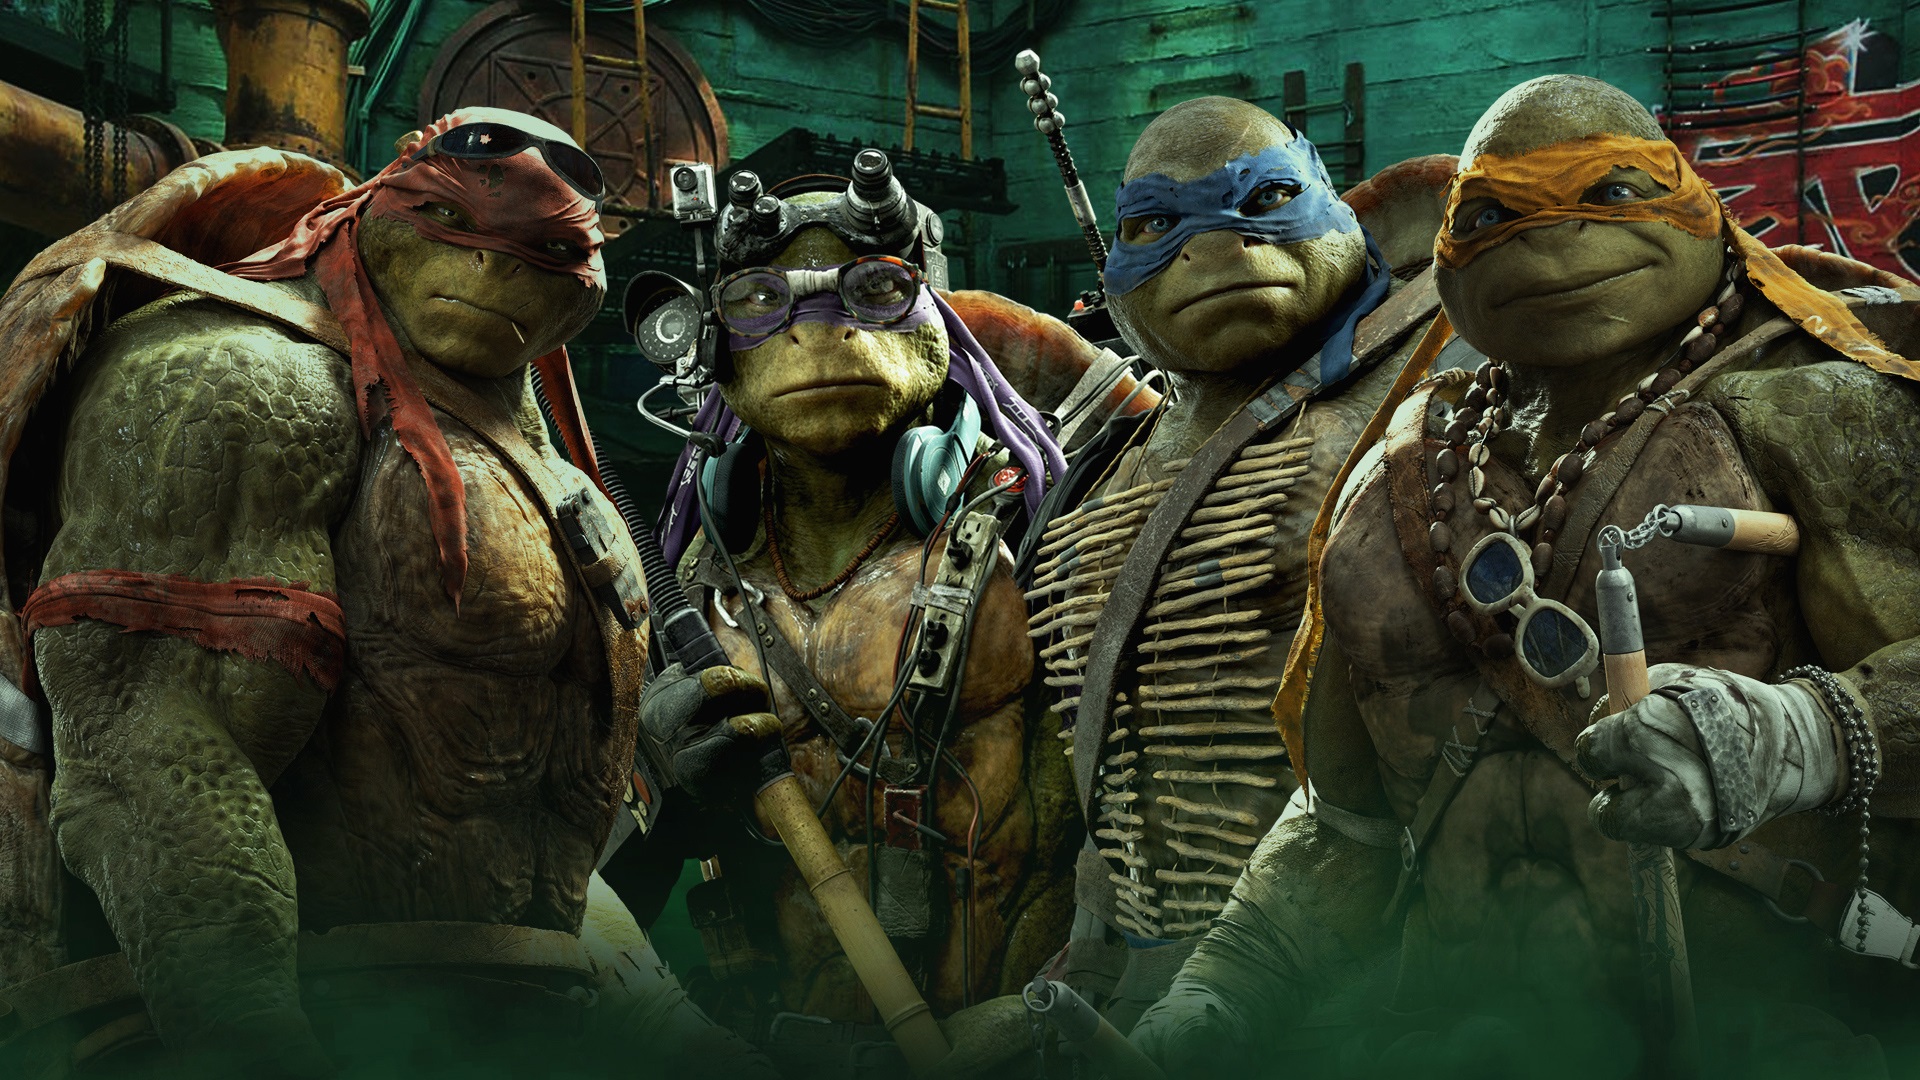 teenage mutant ninja turtles, movie, teenage mutant ninja turtles (2014), donatello (tmnt), leonardo (tmnt), michelangelo (tmnt), raphael (tmnt)